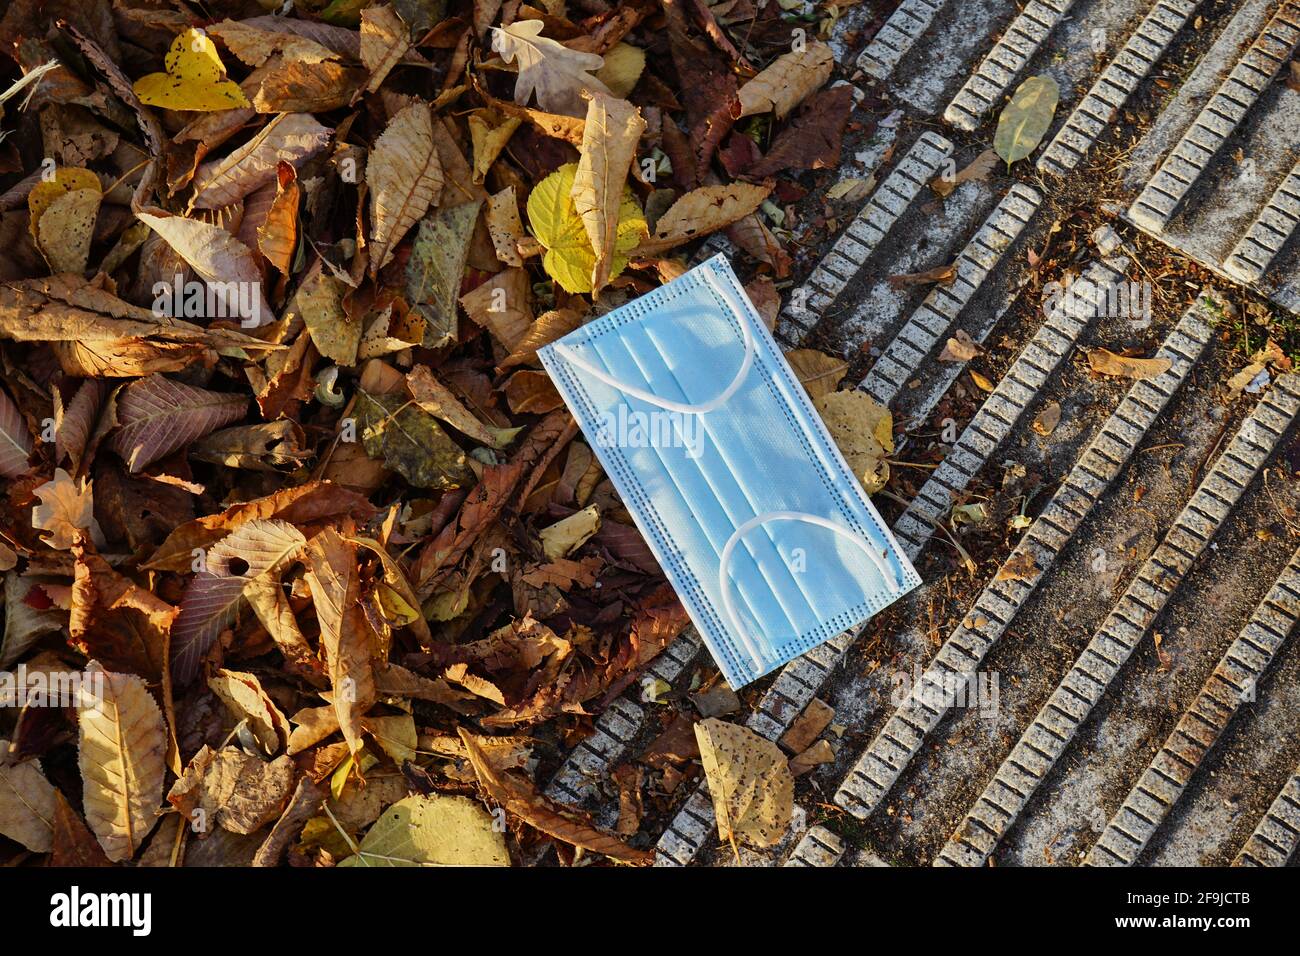 Einweg-Schutzmaske auf dem Boden neben Herbstlaub, Mund-Nase-Bedeckung, Infektionsschutz gegen Covid 19, Berlin, Deutschland Foto Stock